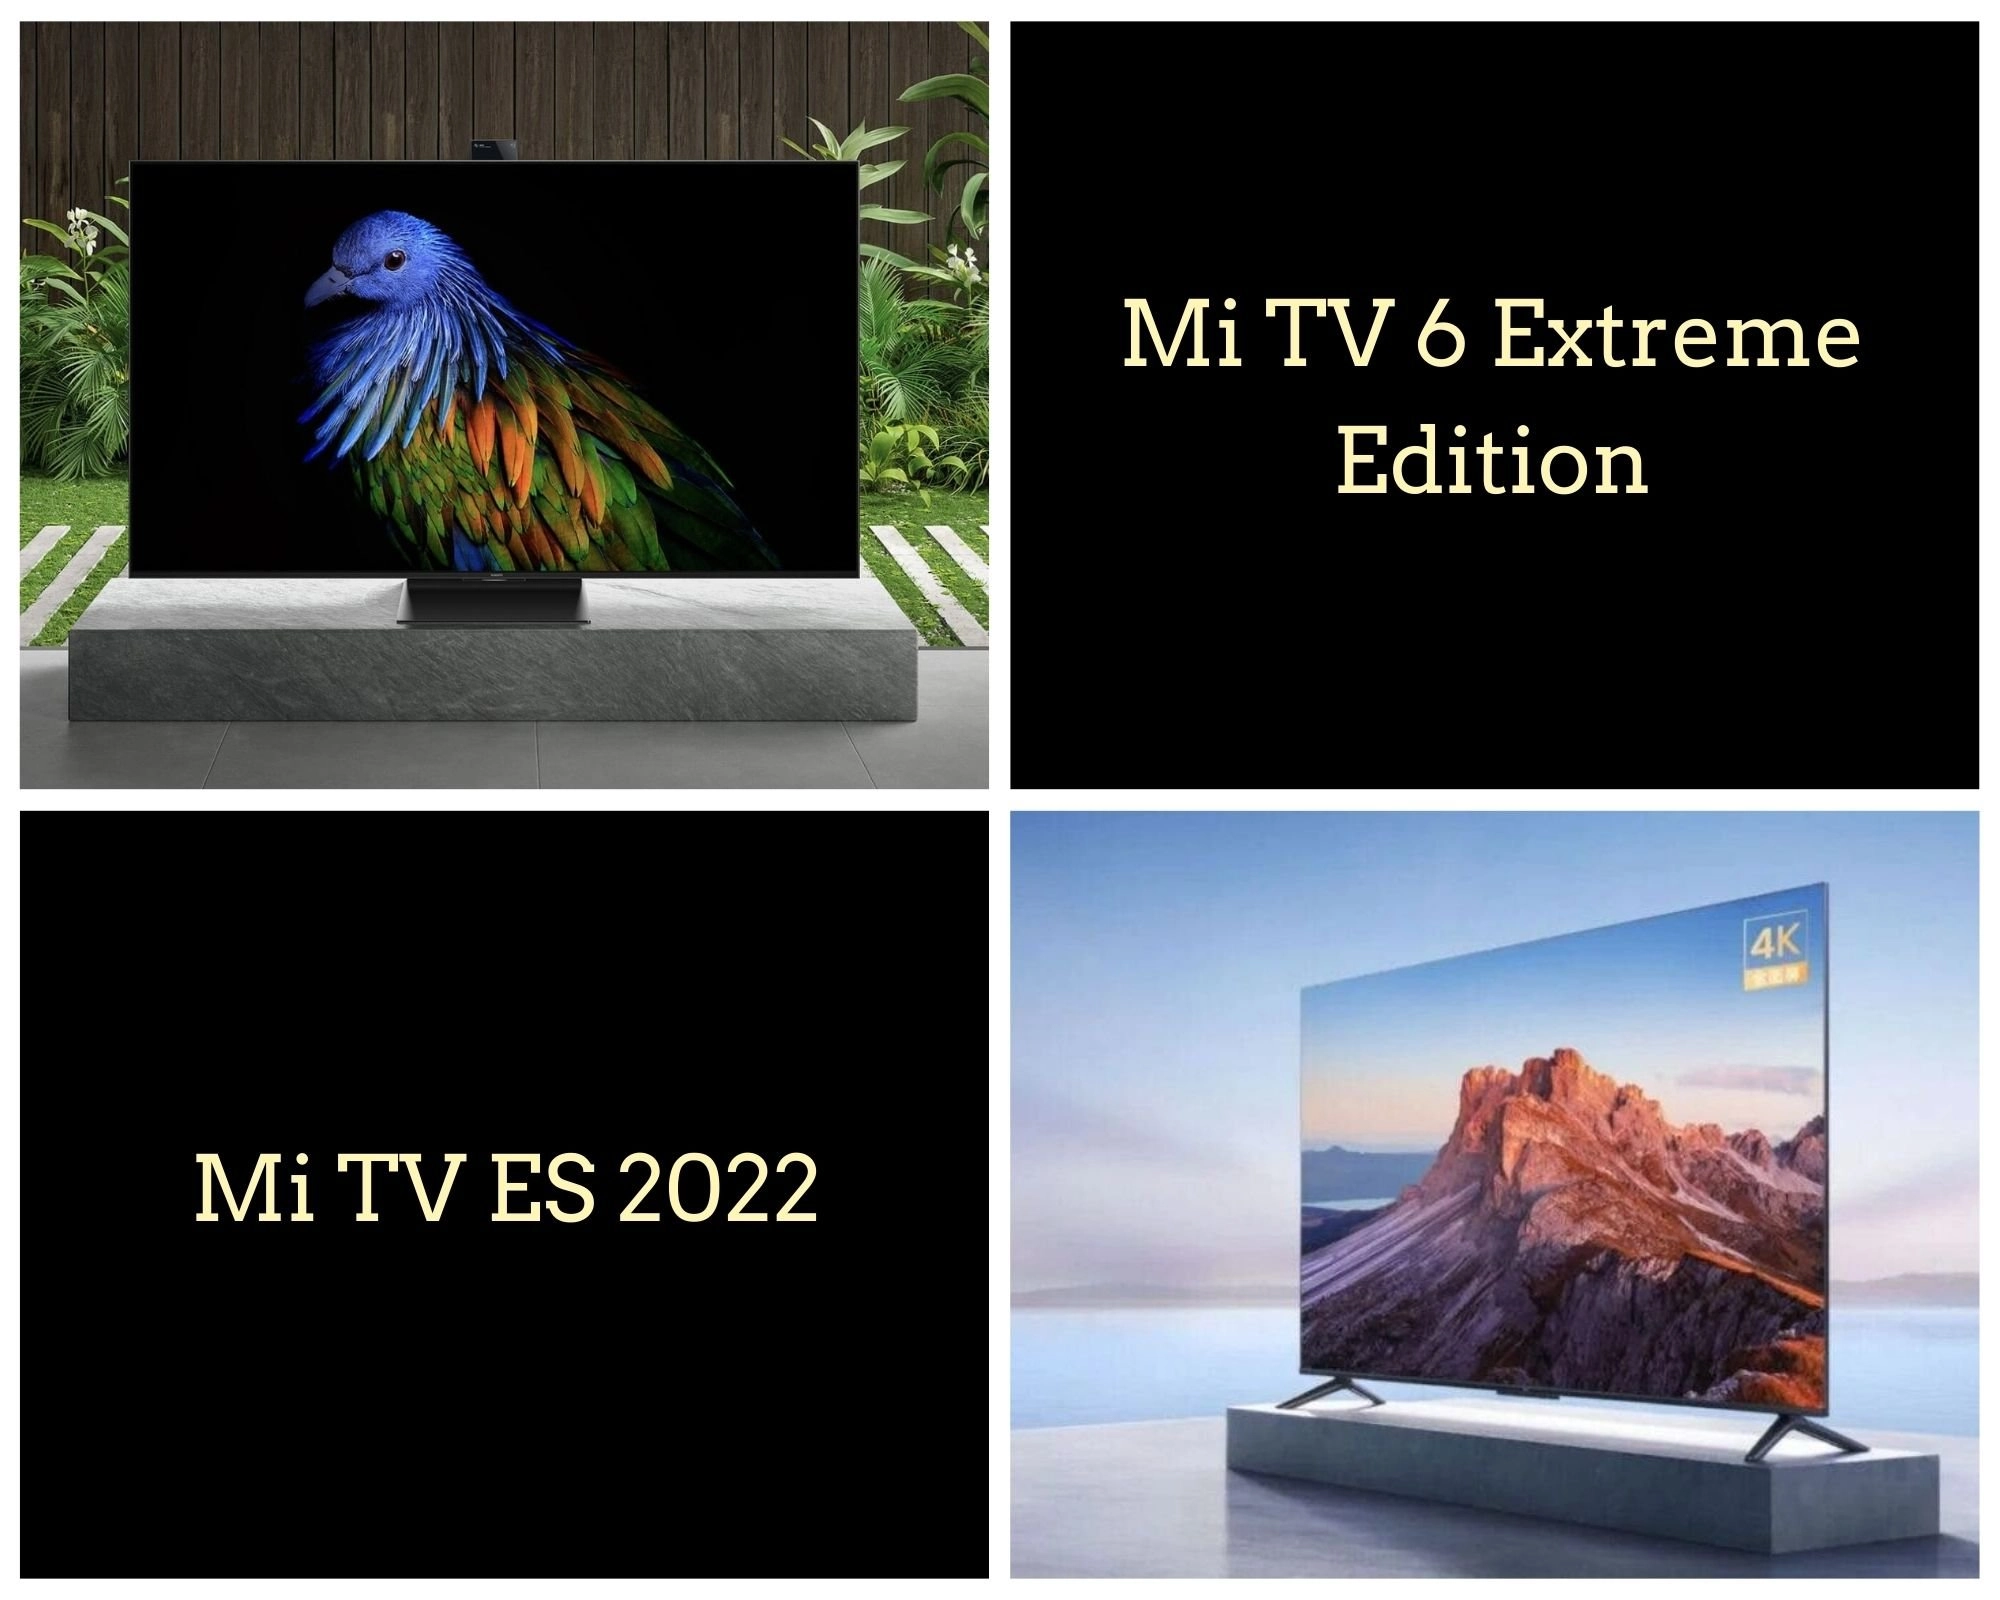 Mi TV 6 Extreme Edition And Mi TV ES 2022